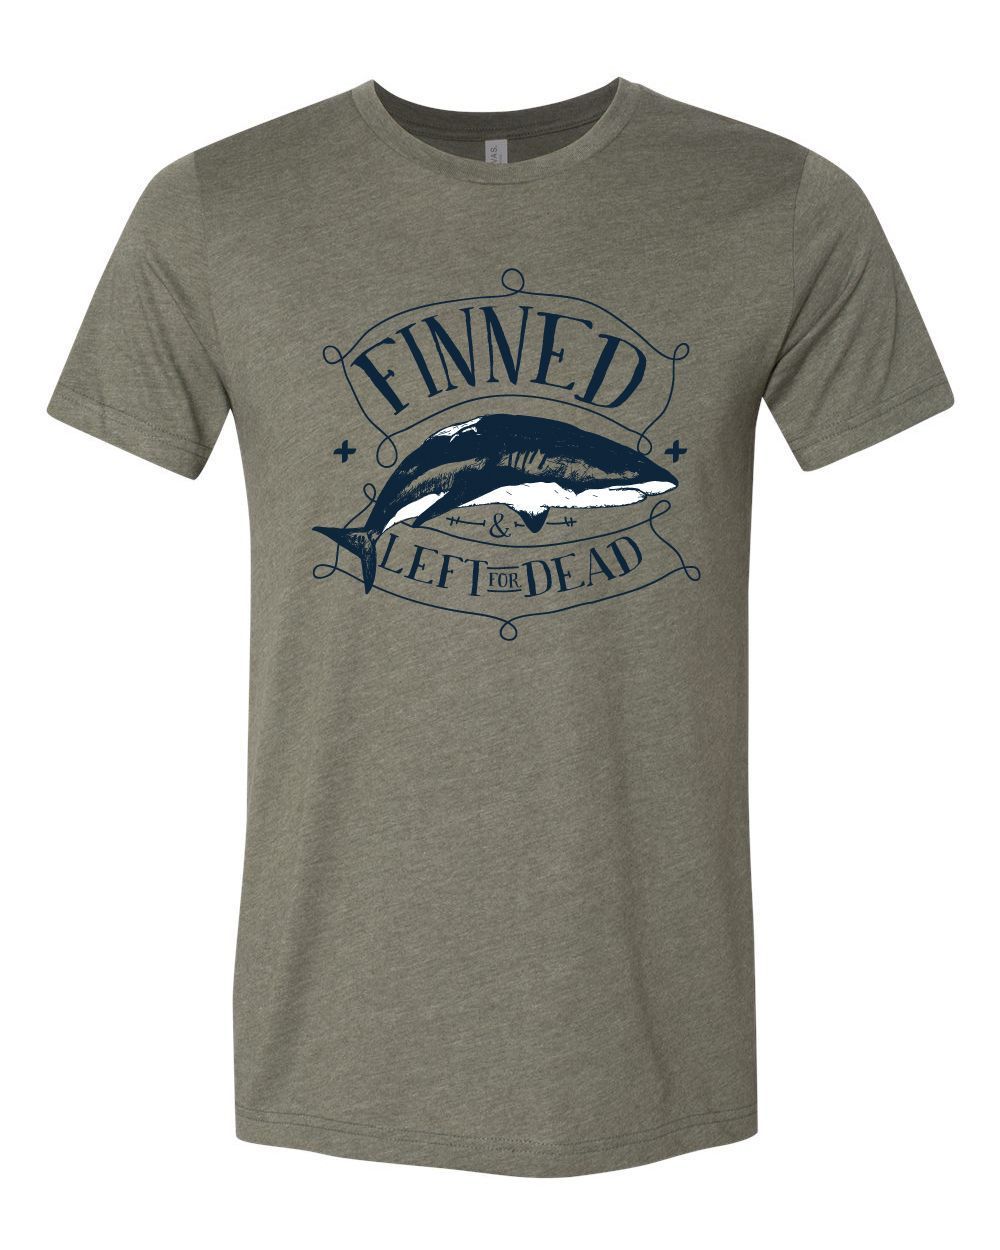 FINNED SHARK Jersey T Shirt